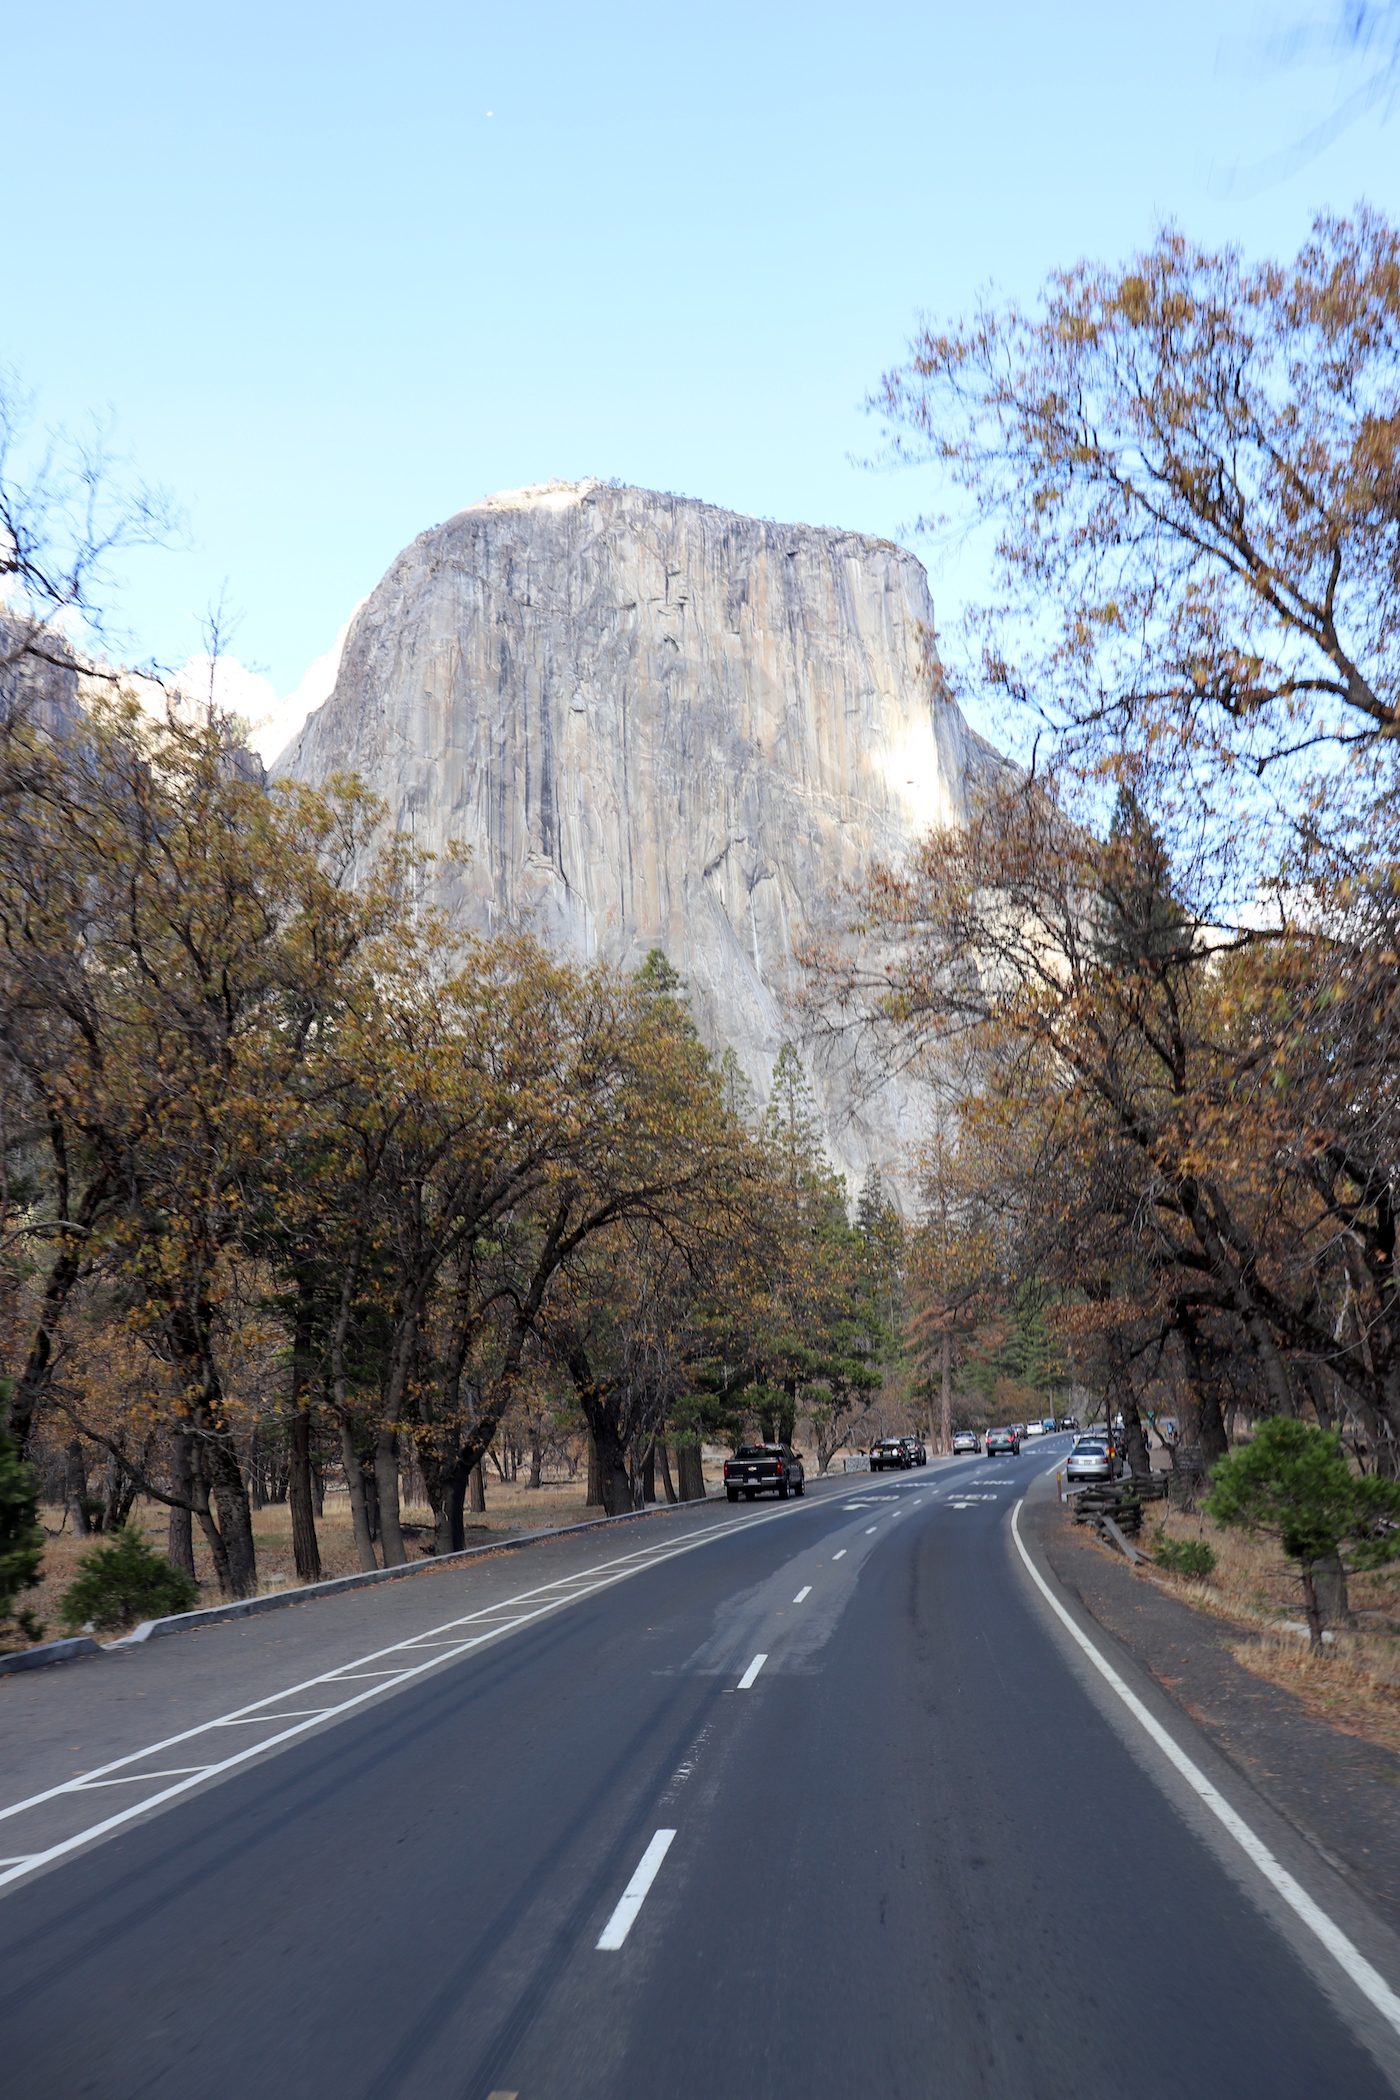 Park Entrance - View to El Capitan, Yosemite